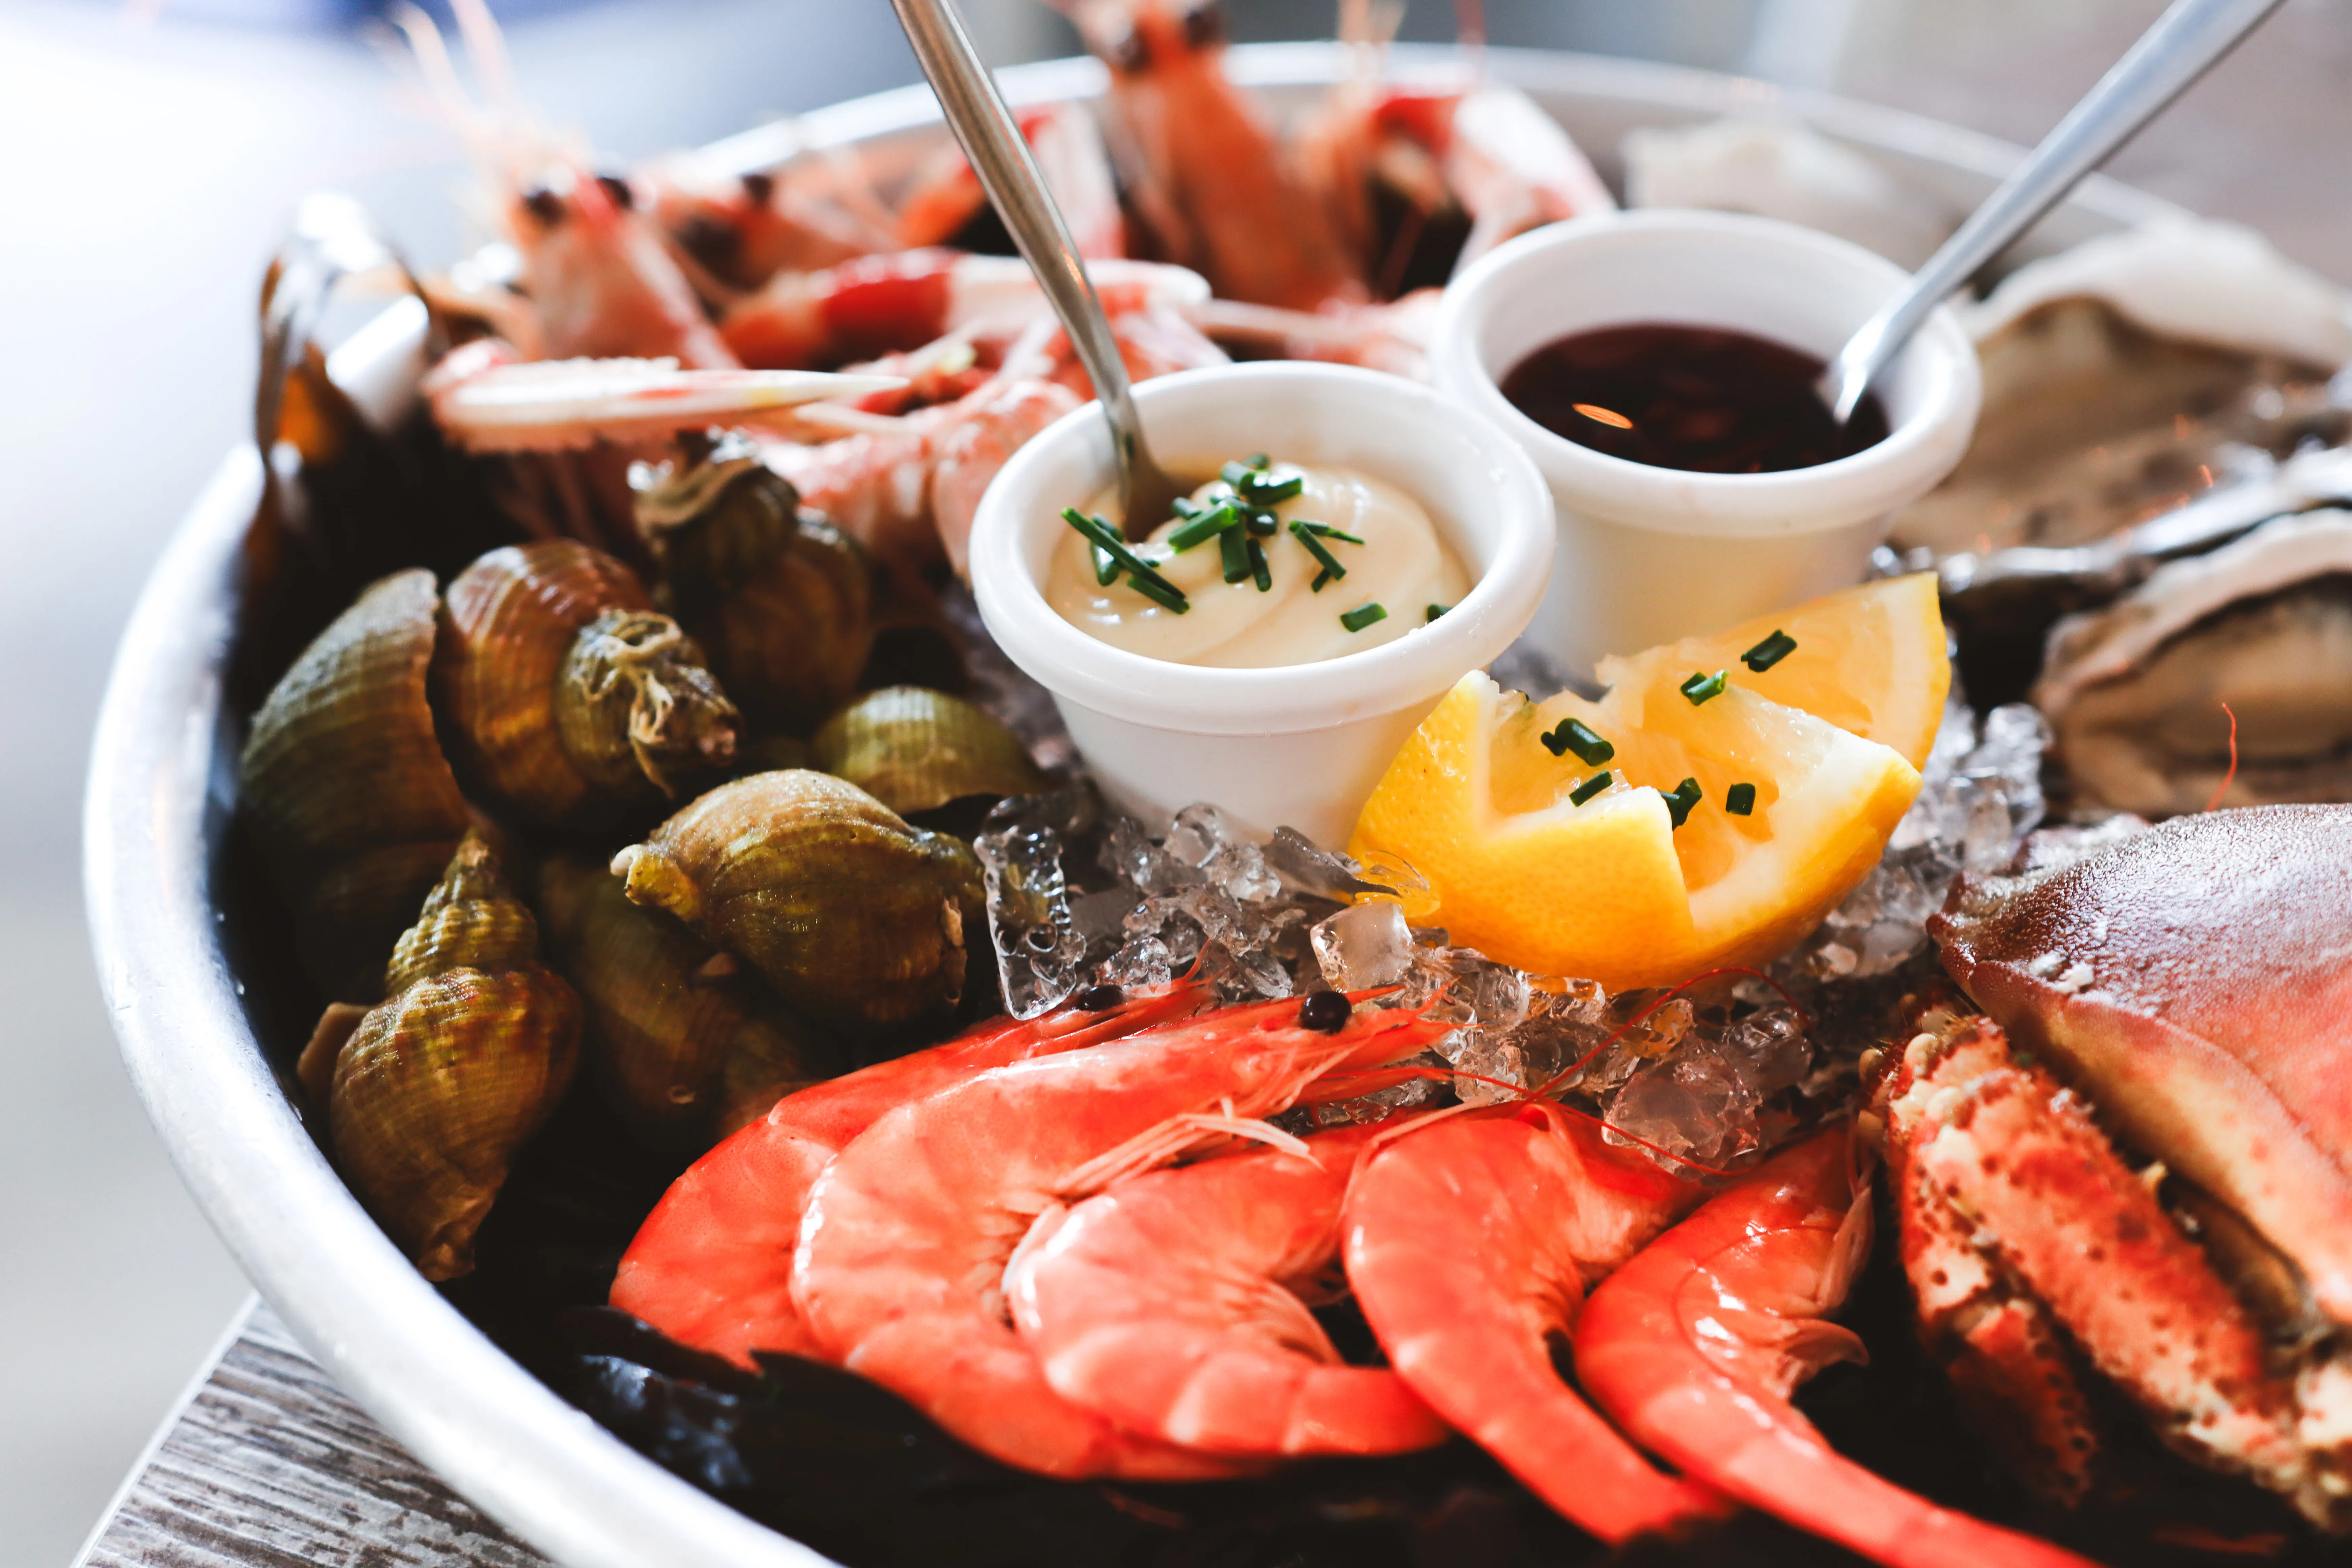 Image assiette de fruits de mer : crevettes, huîtres, mollusques...